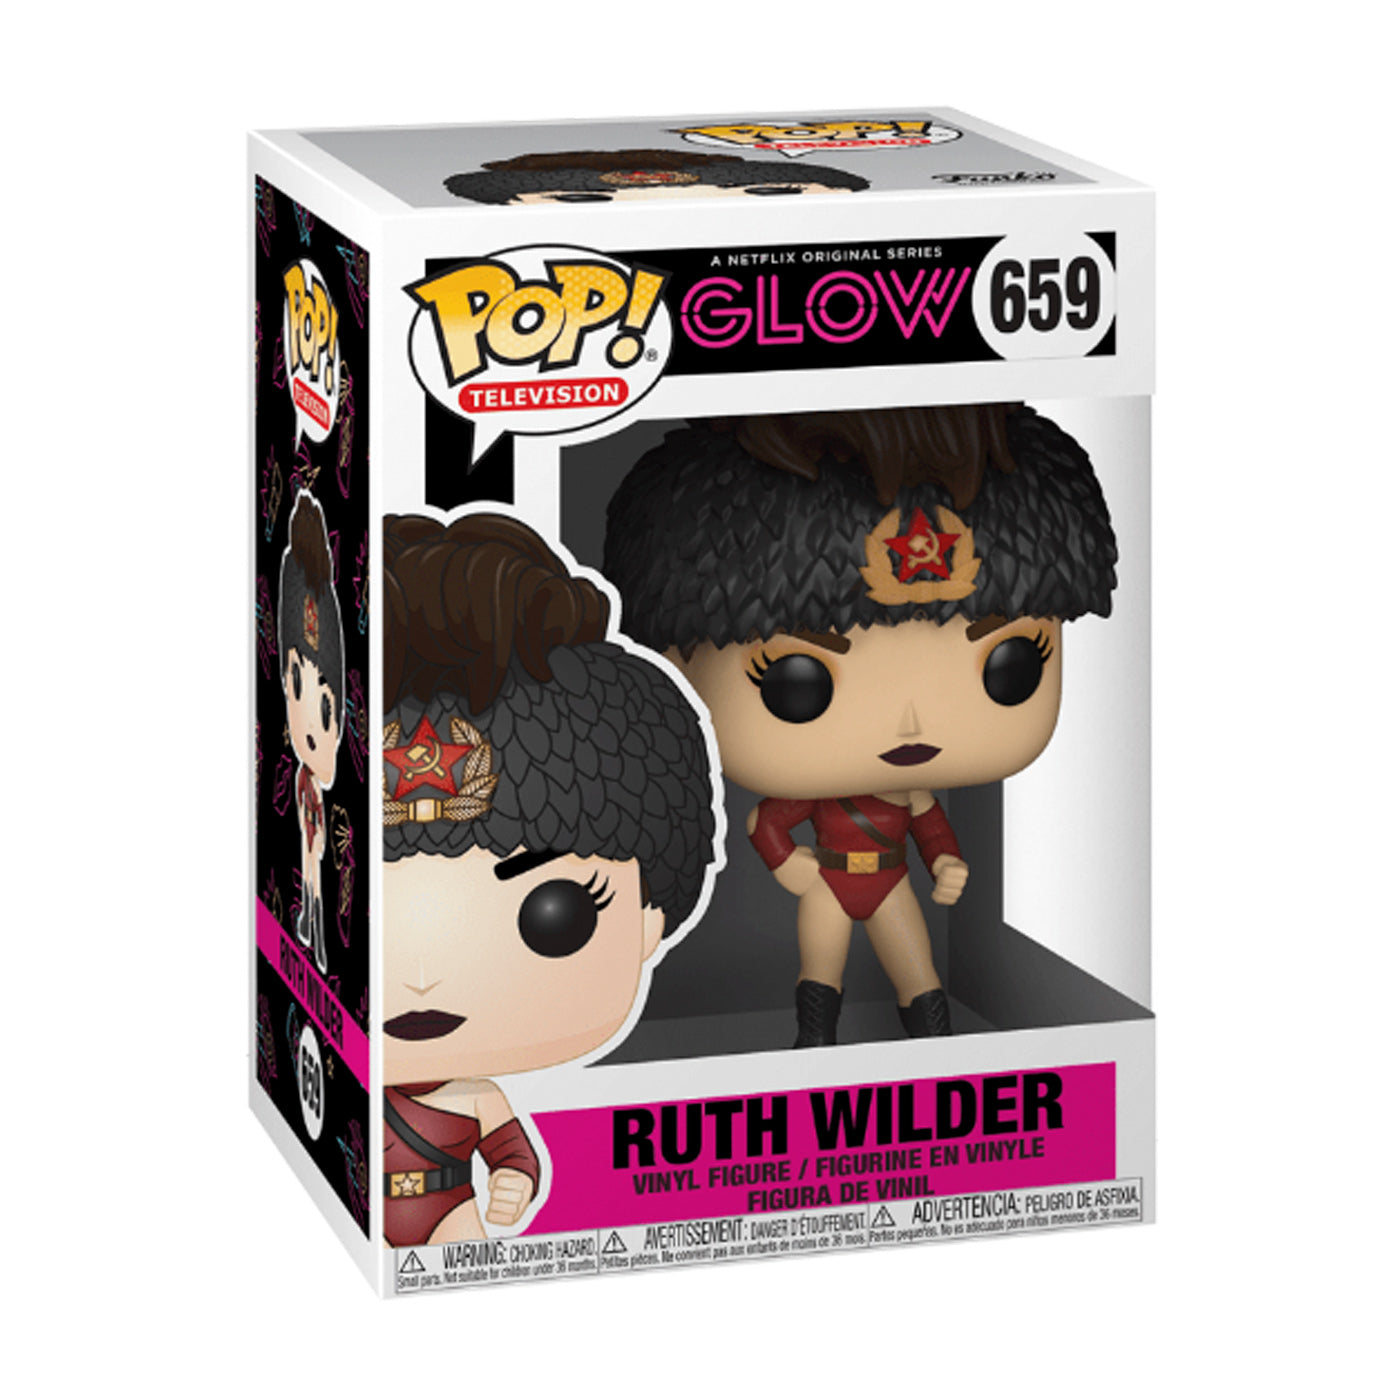 Funko Pop Television: Ruth Wilder (659)